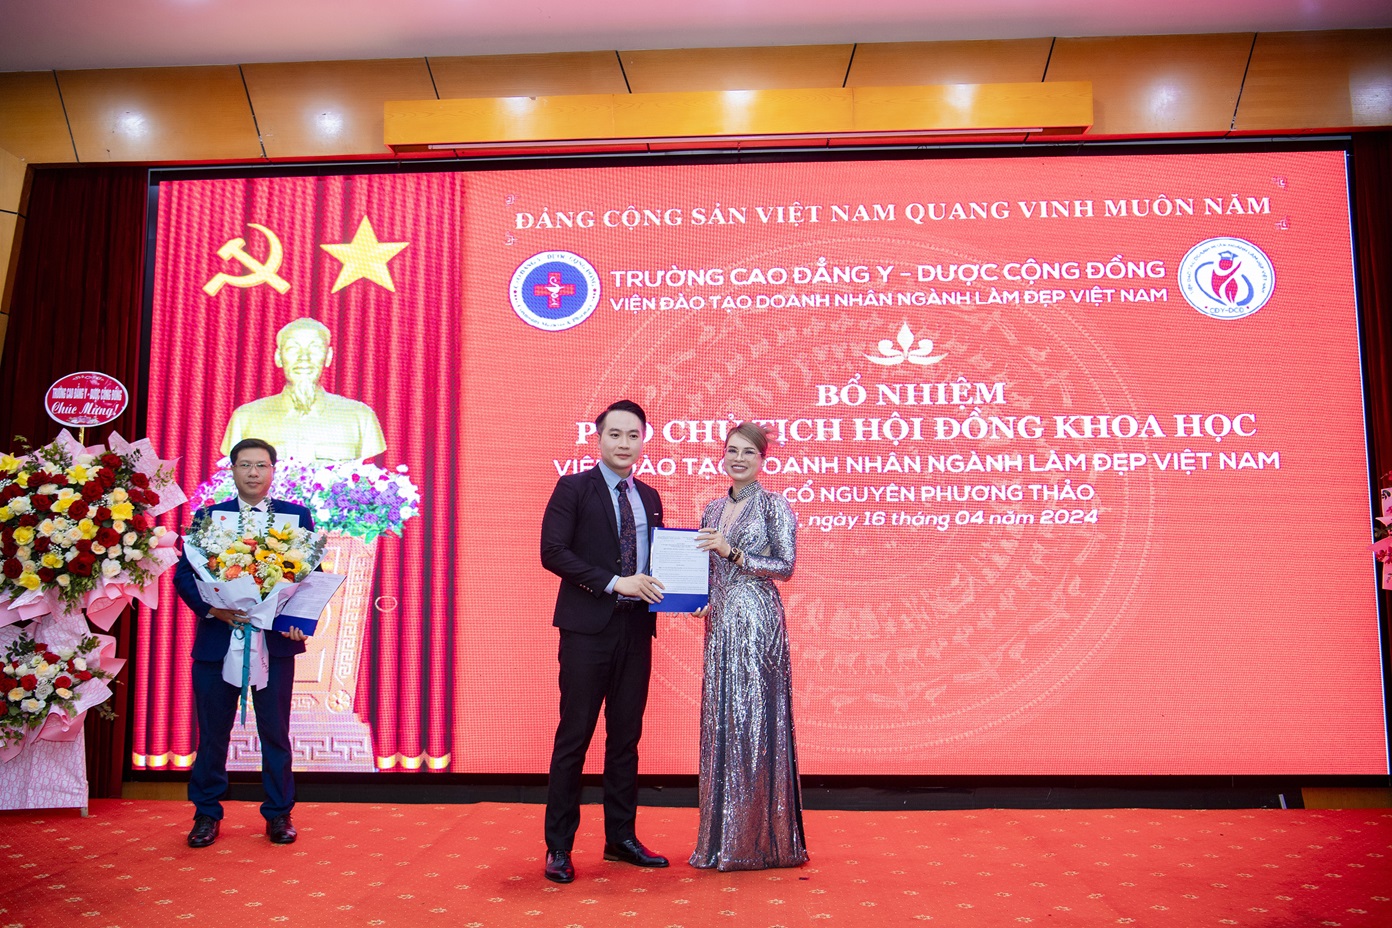 Bổ nhiệm bà Vương Phạm Song Bình là Viện trưởng Viện đào tạo doanh nhân ngành làm đẹp Việt Nam